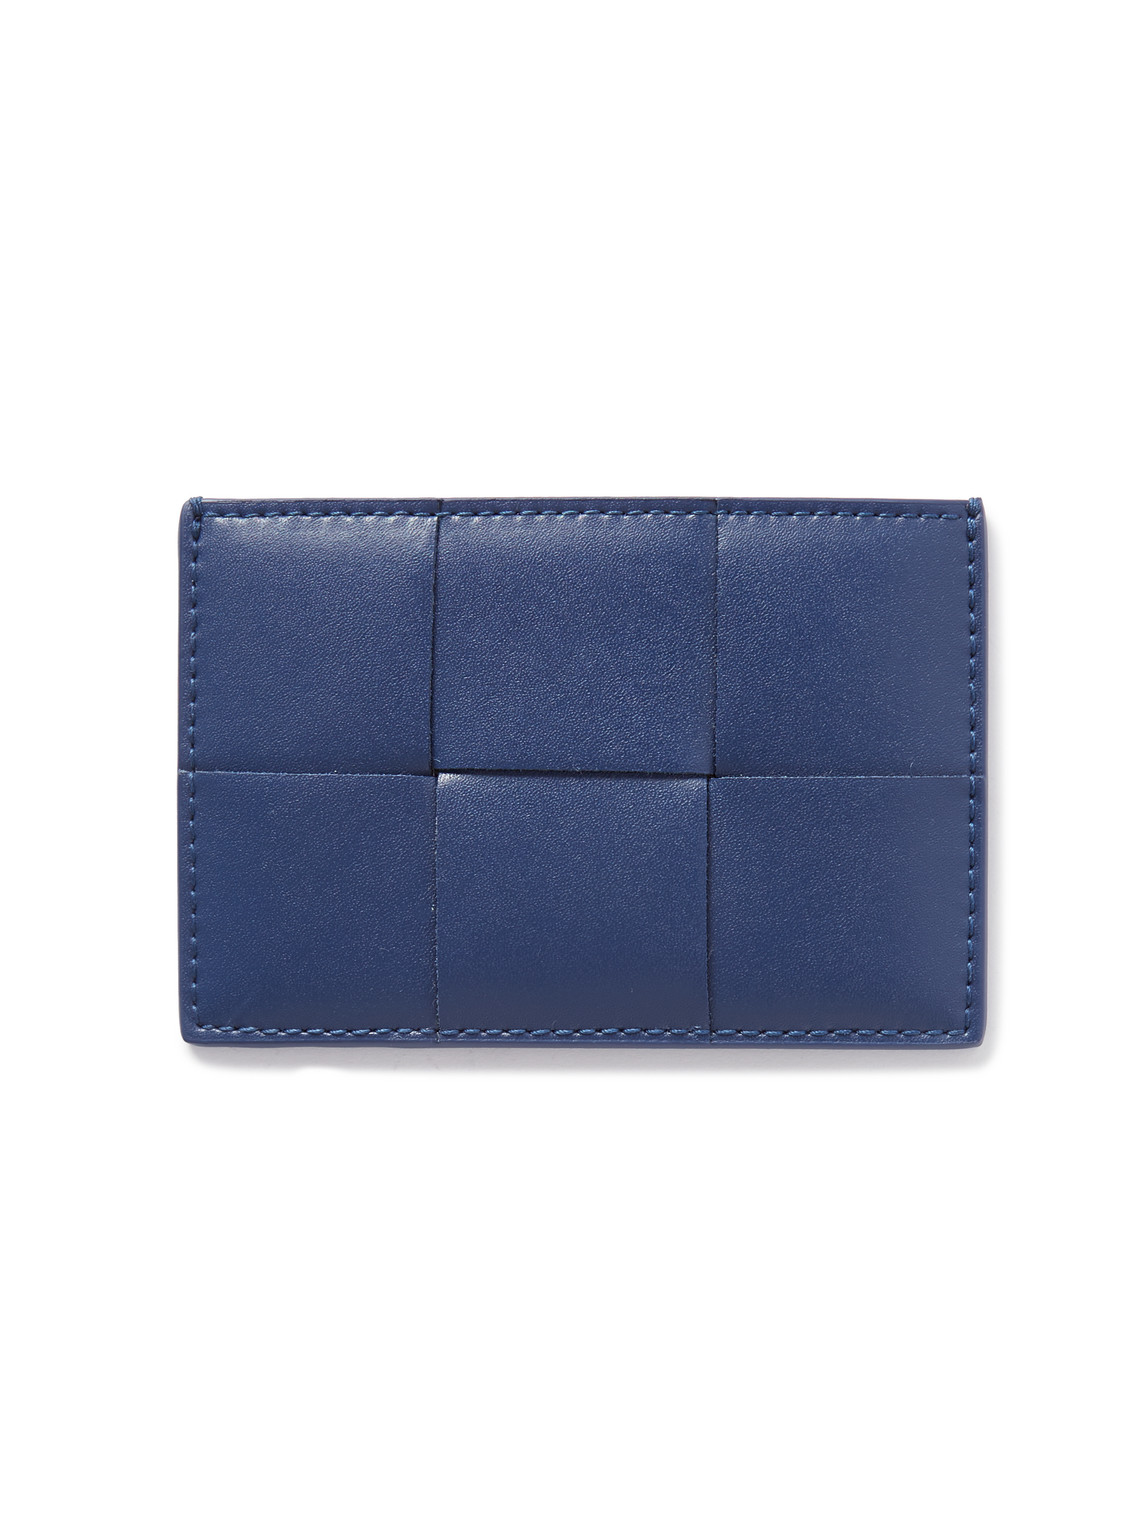 Bottega Veneta Intrecciato Leather Cardholder In Blue